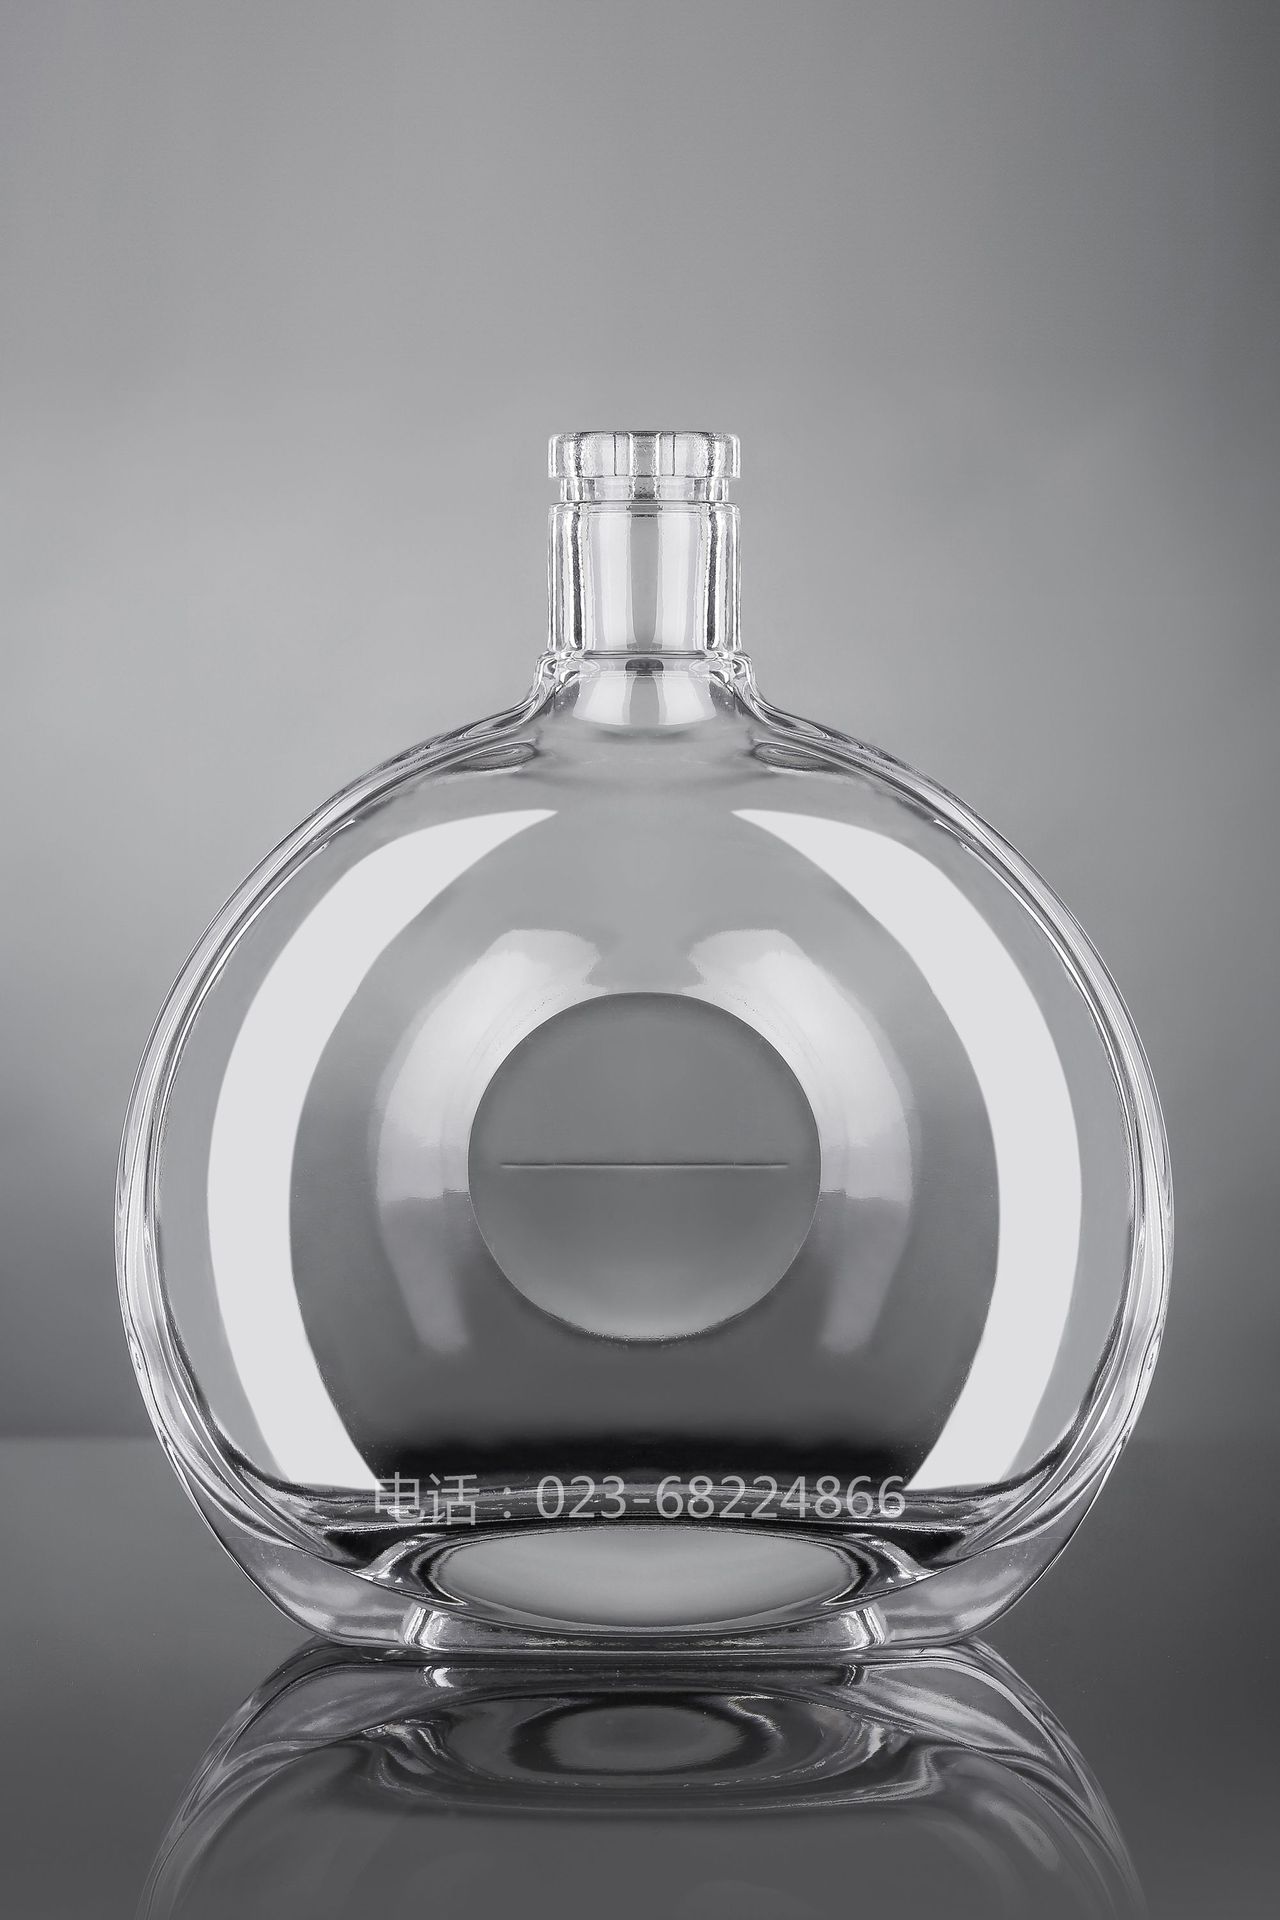 HJ-Y007白兰地酒瓶1000ML玻璃酒瓶/玻璃洋酒瓶//威士忌酒瓶